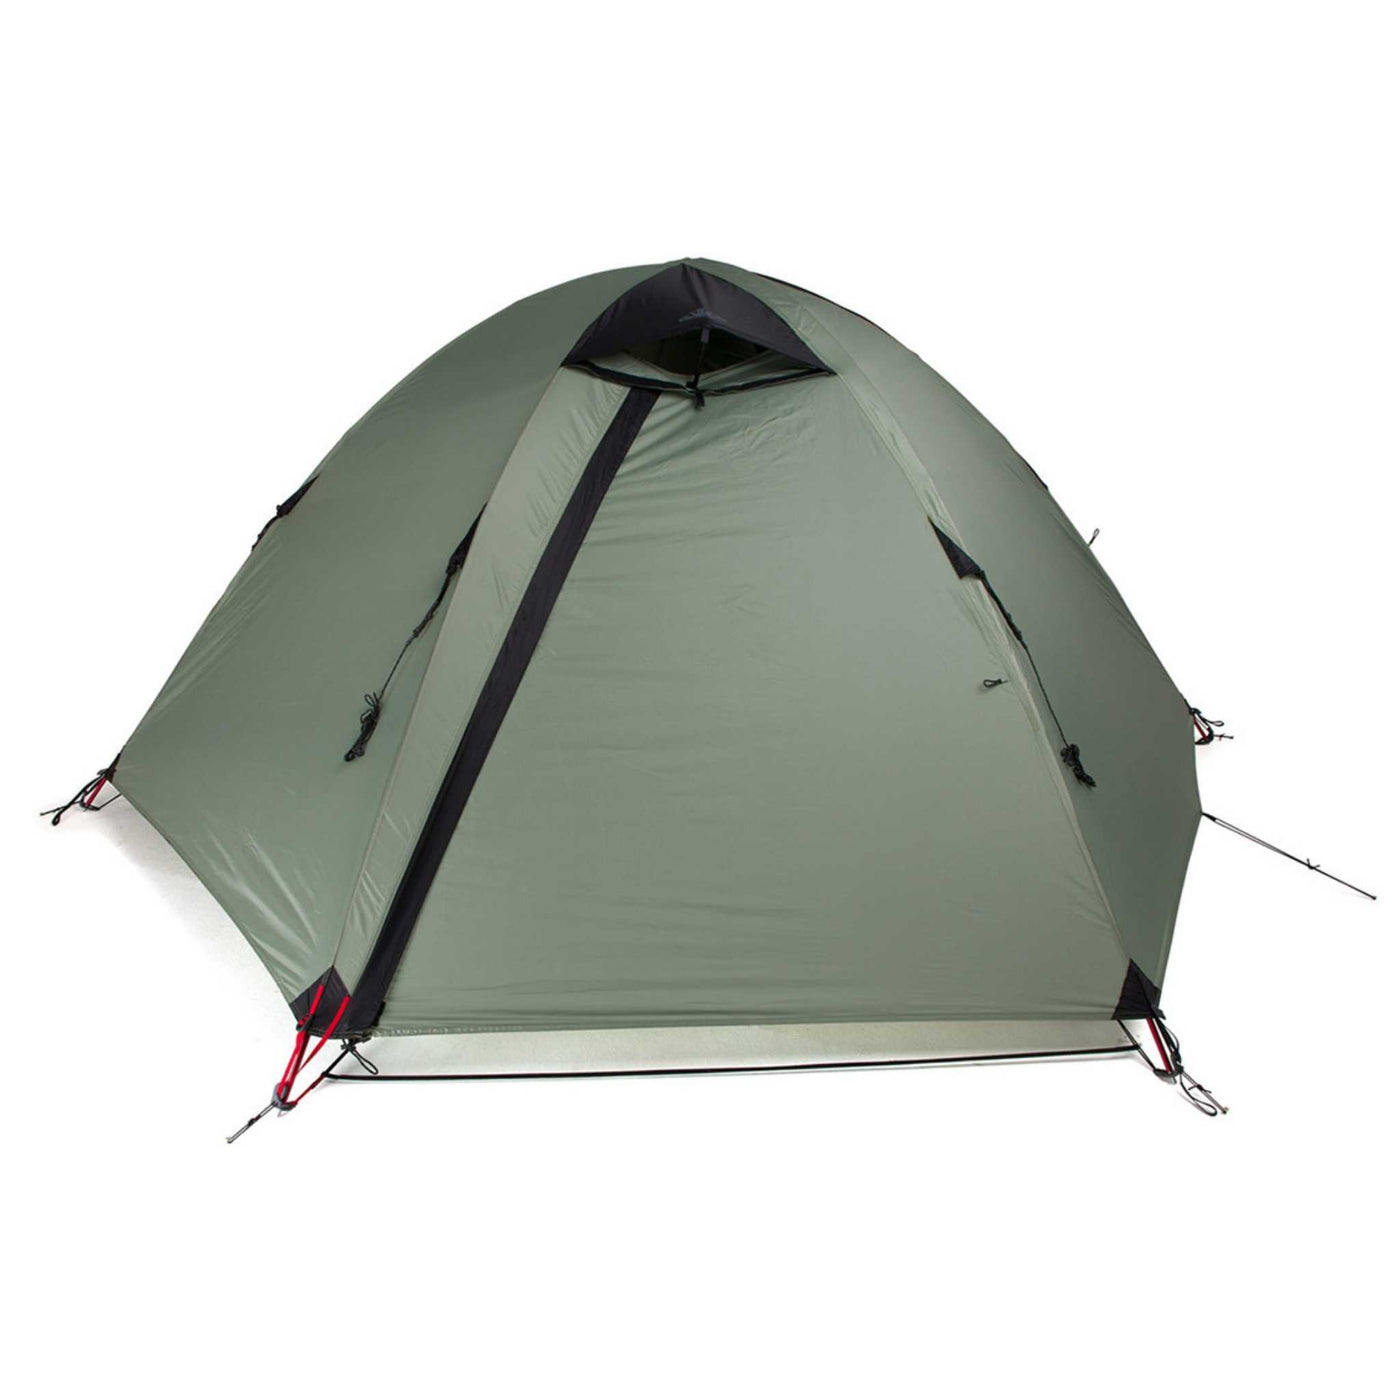 Wilderness Equipment I-Explore 2 Person Tent | Lightweight 4 Season Tent | Further Faster Christchurch NZ #eucalypt